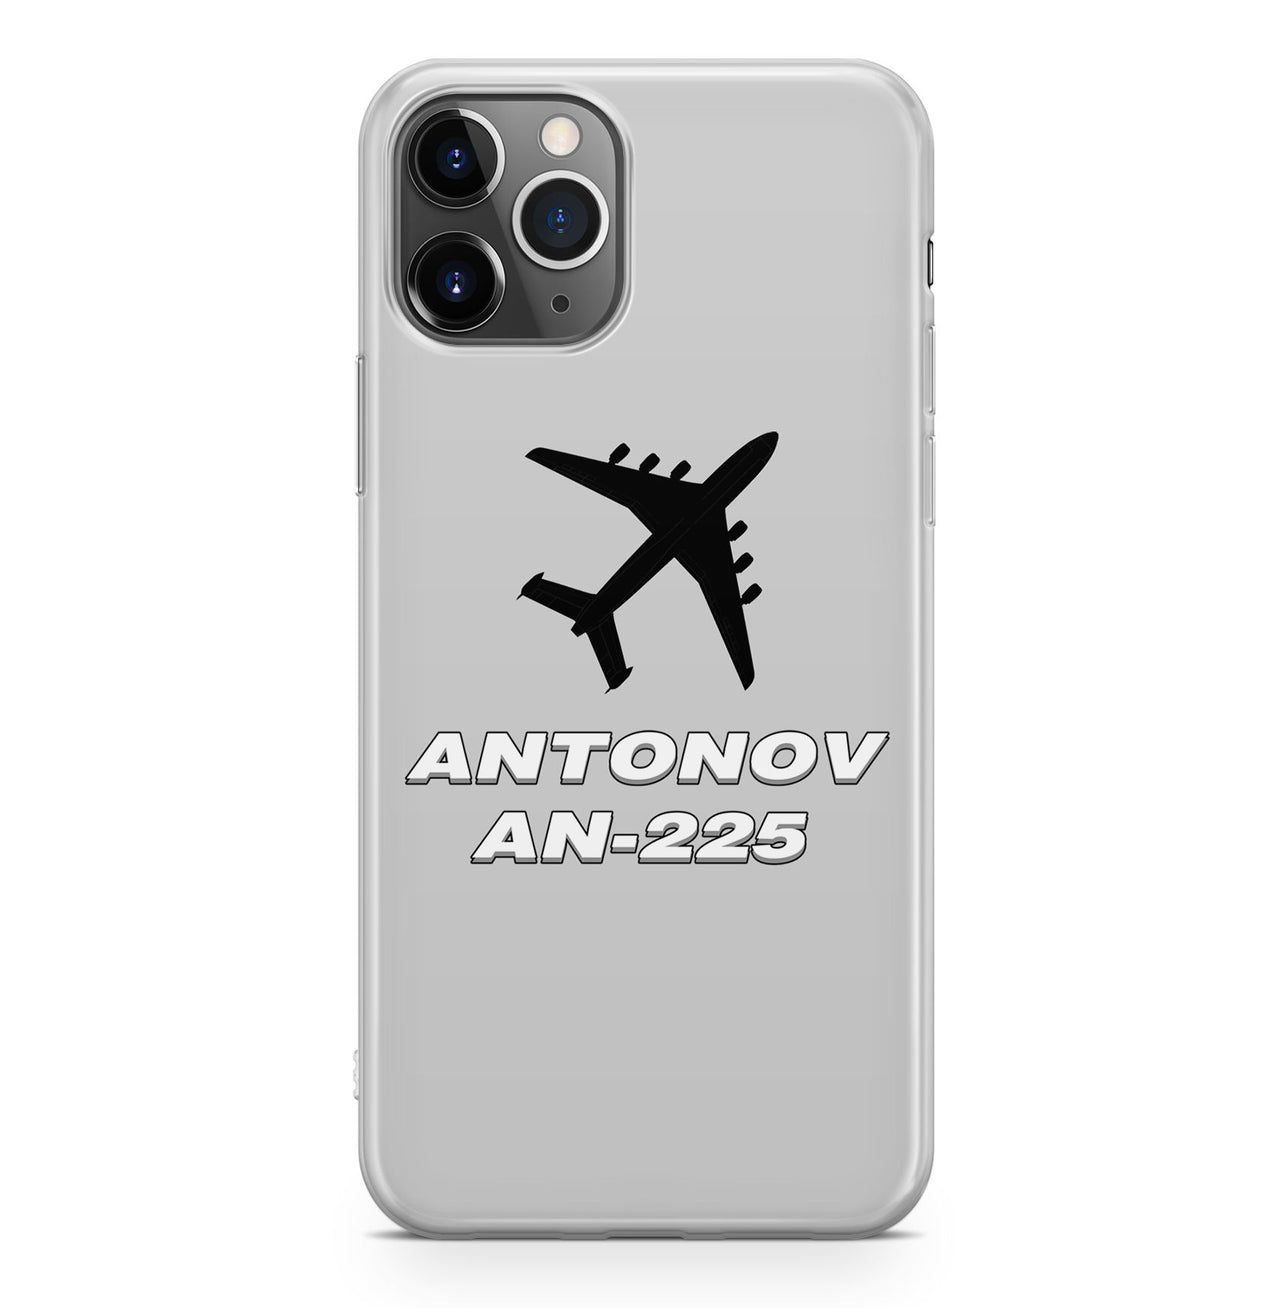 Antonov AN-225 (28) Designed iPhone Cases